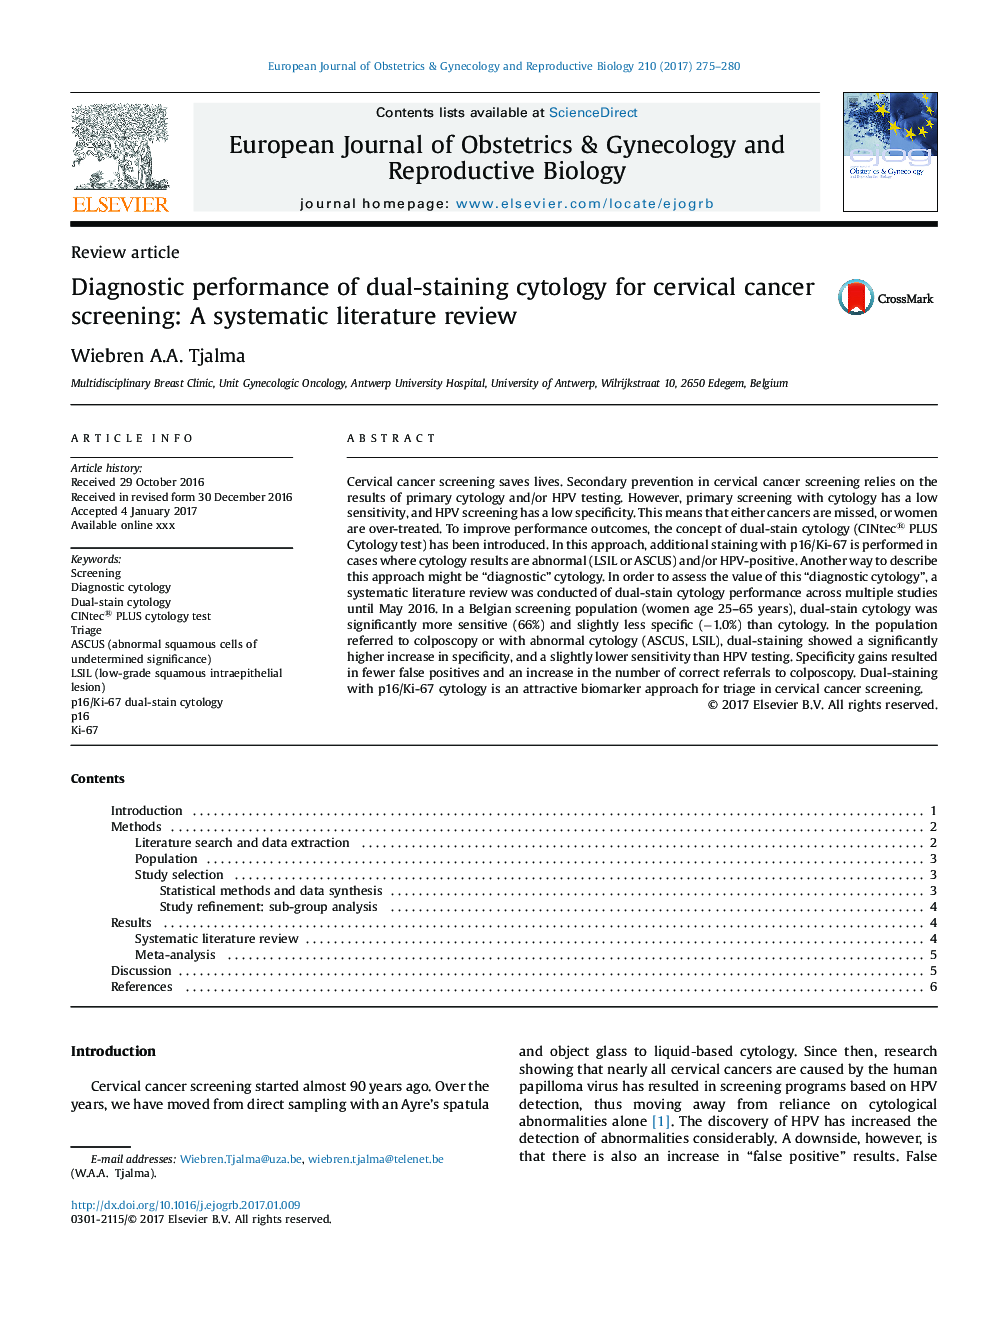 عملکرد تشخیصی سیتولوژی دو رنگی برای غربالگری سرطان دهانه رحم: یک بررسی ادبی سیستماتیک 